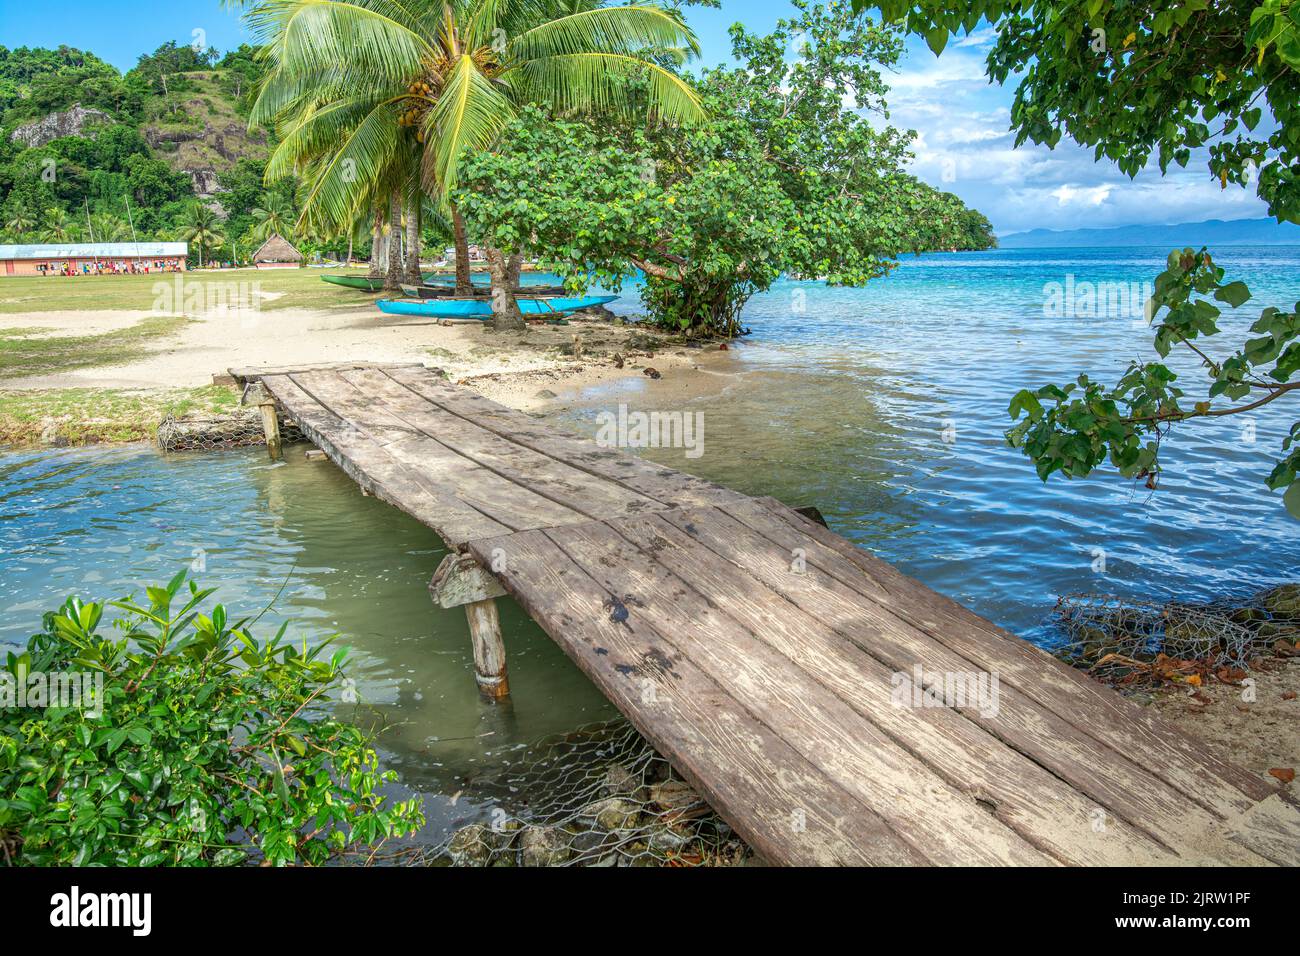 Eine kleine hölzerne Plattform überquert einen kleinen Bach, der in einer kleinen Inselstadt in Fidschi zum Meer führt. Stockfoto